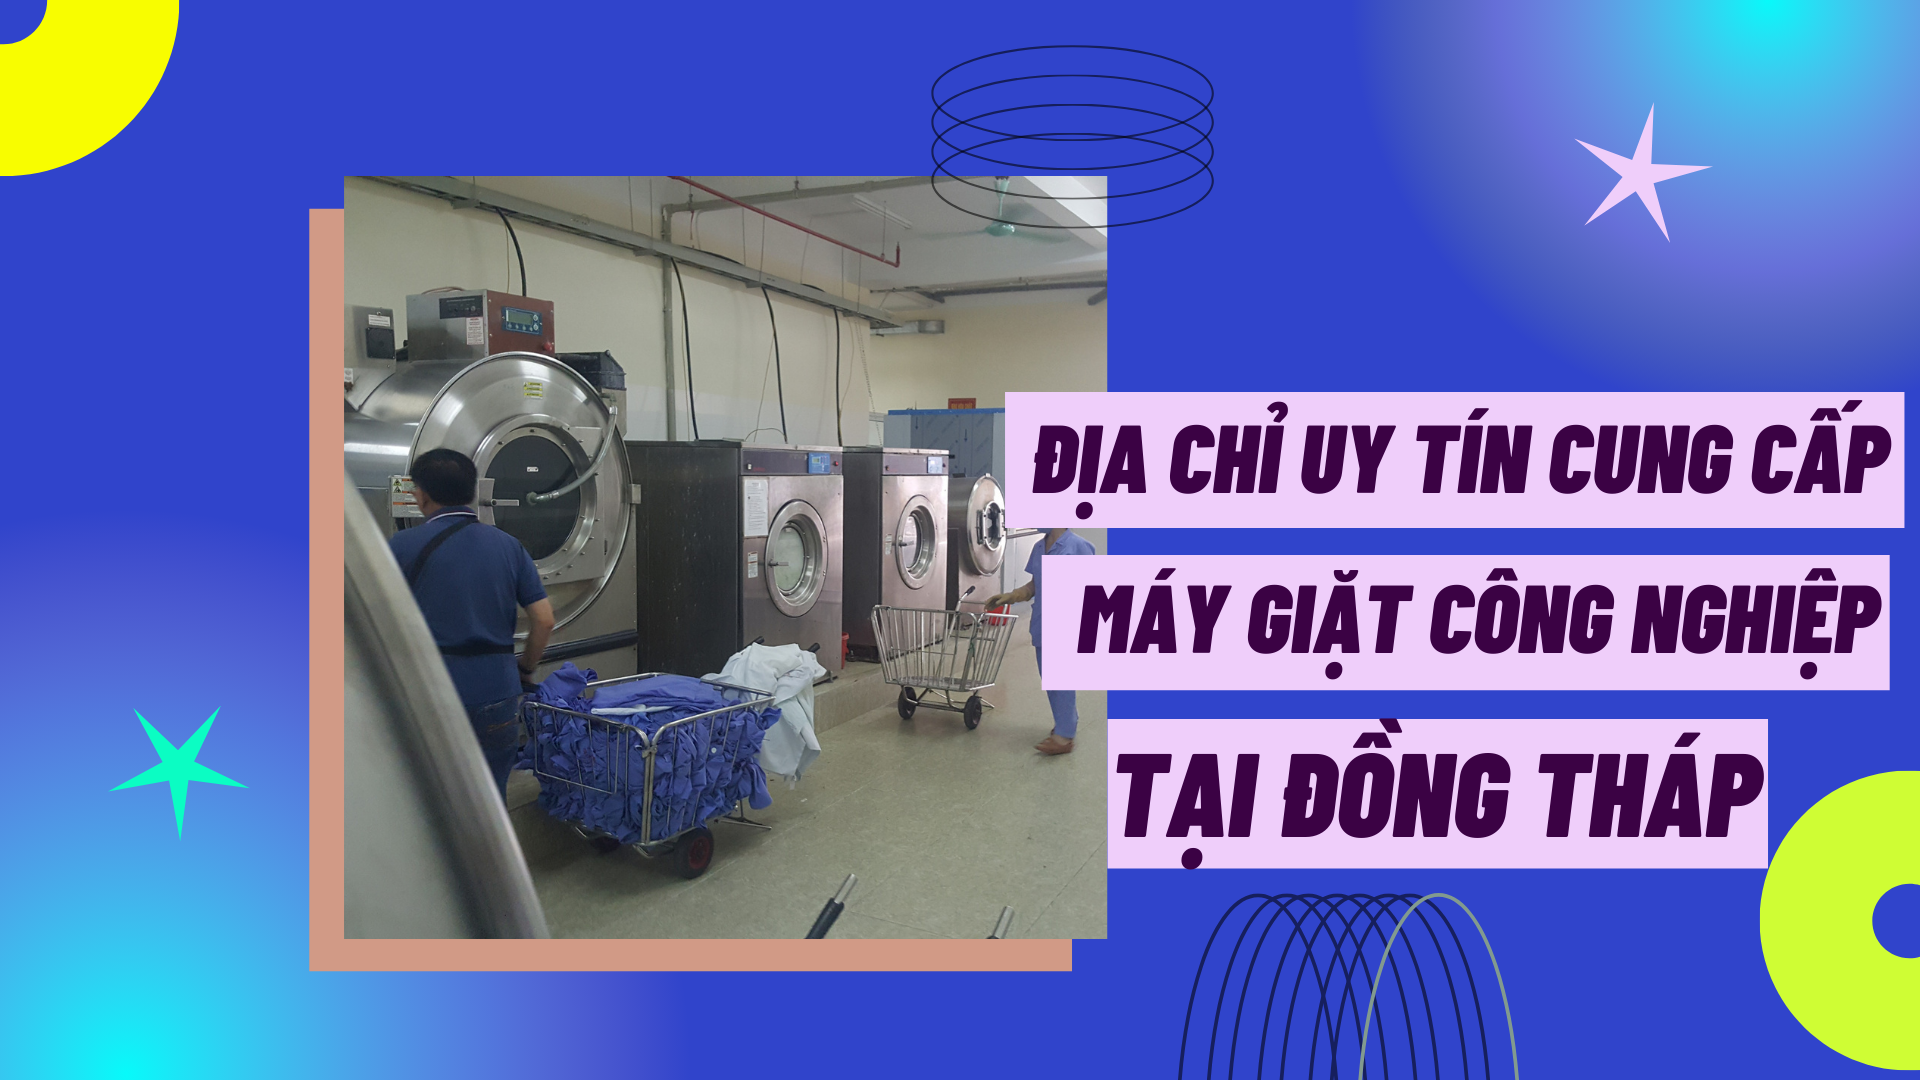 Địa chỉ uy tín cung cấp máy giặt công nghiệp tại Đồng Tháp